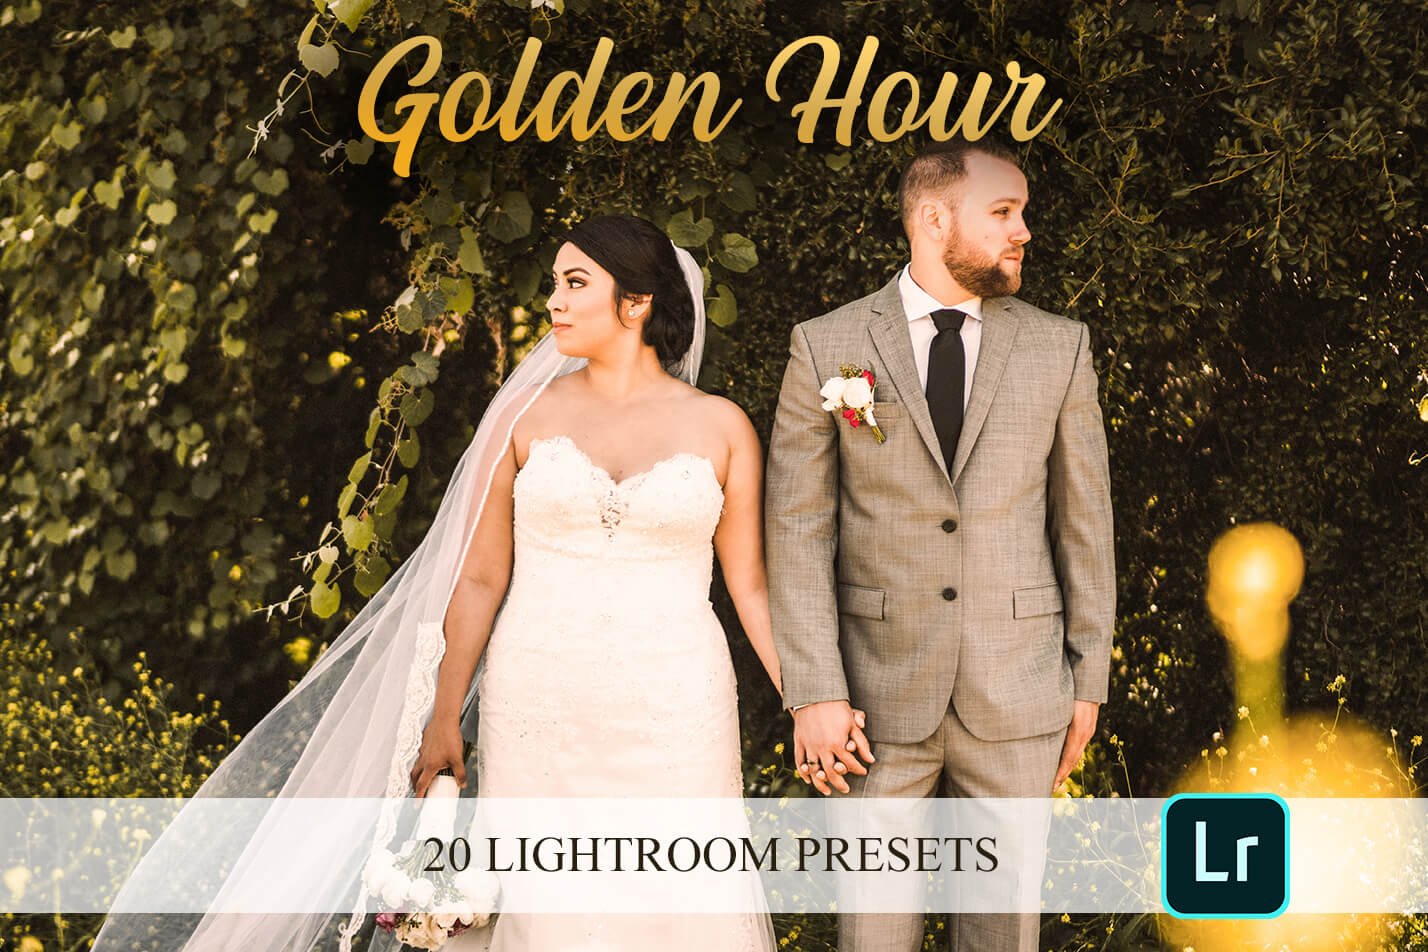 Lightroom Presets - Golden Hourcover image.